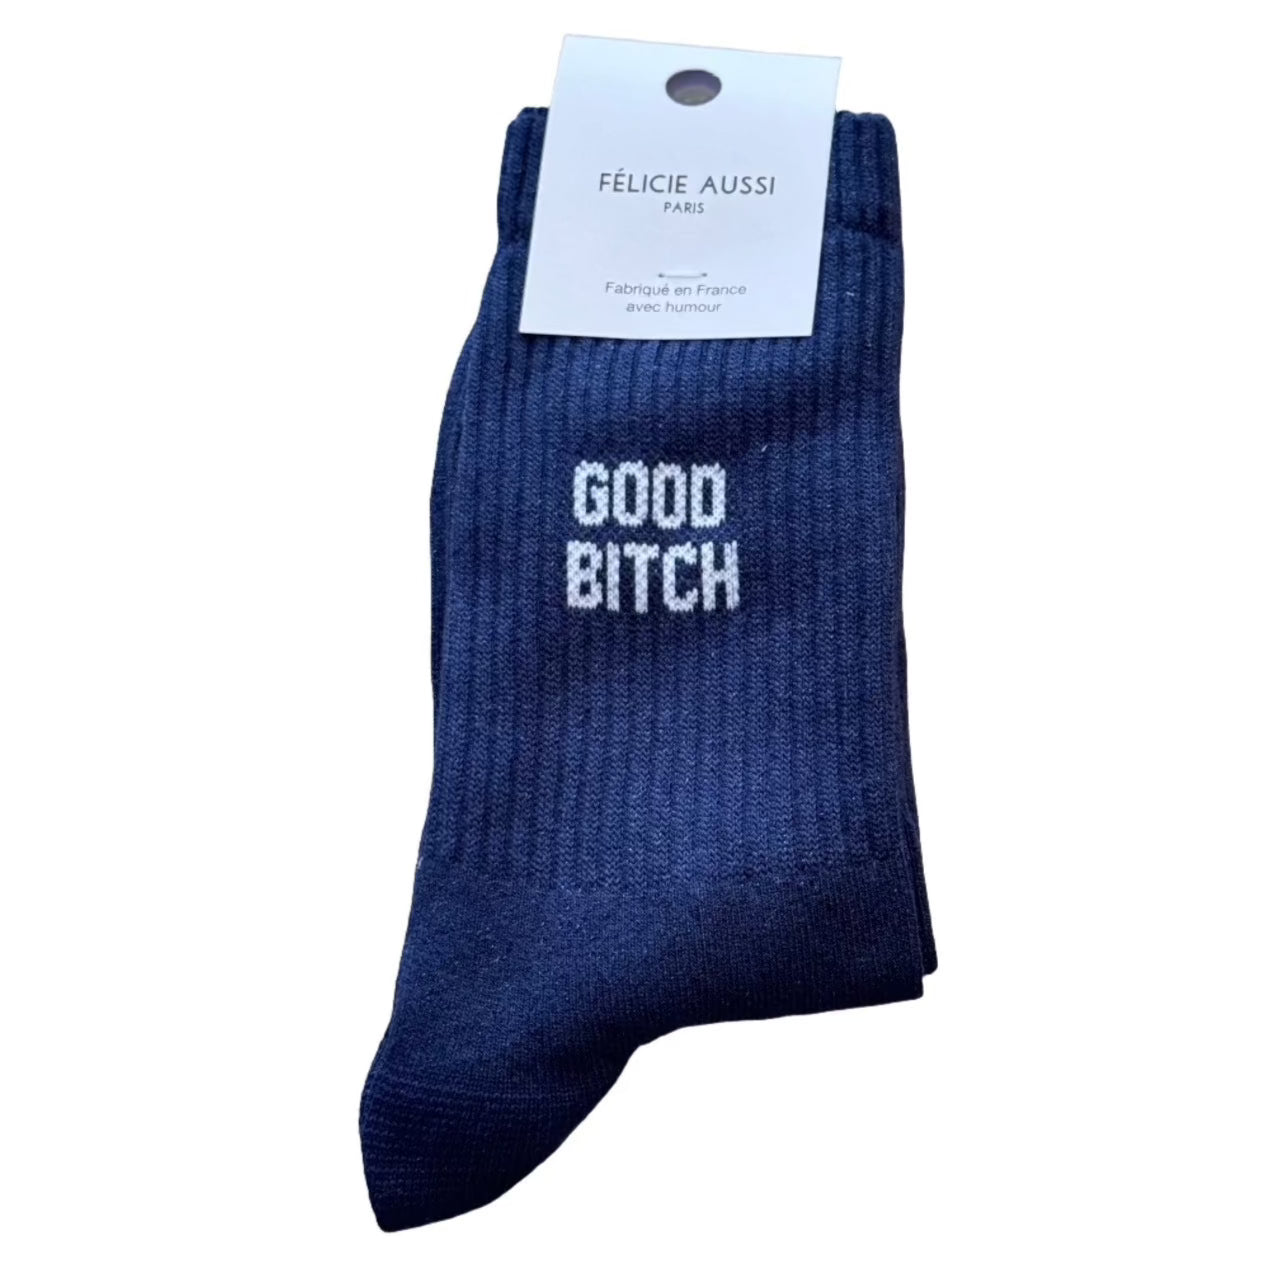 Good Bitch | Glitter Socks